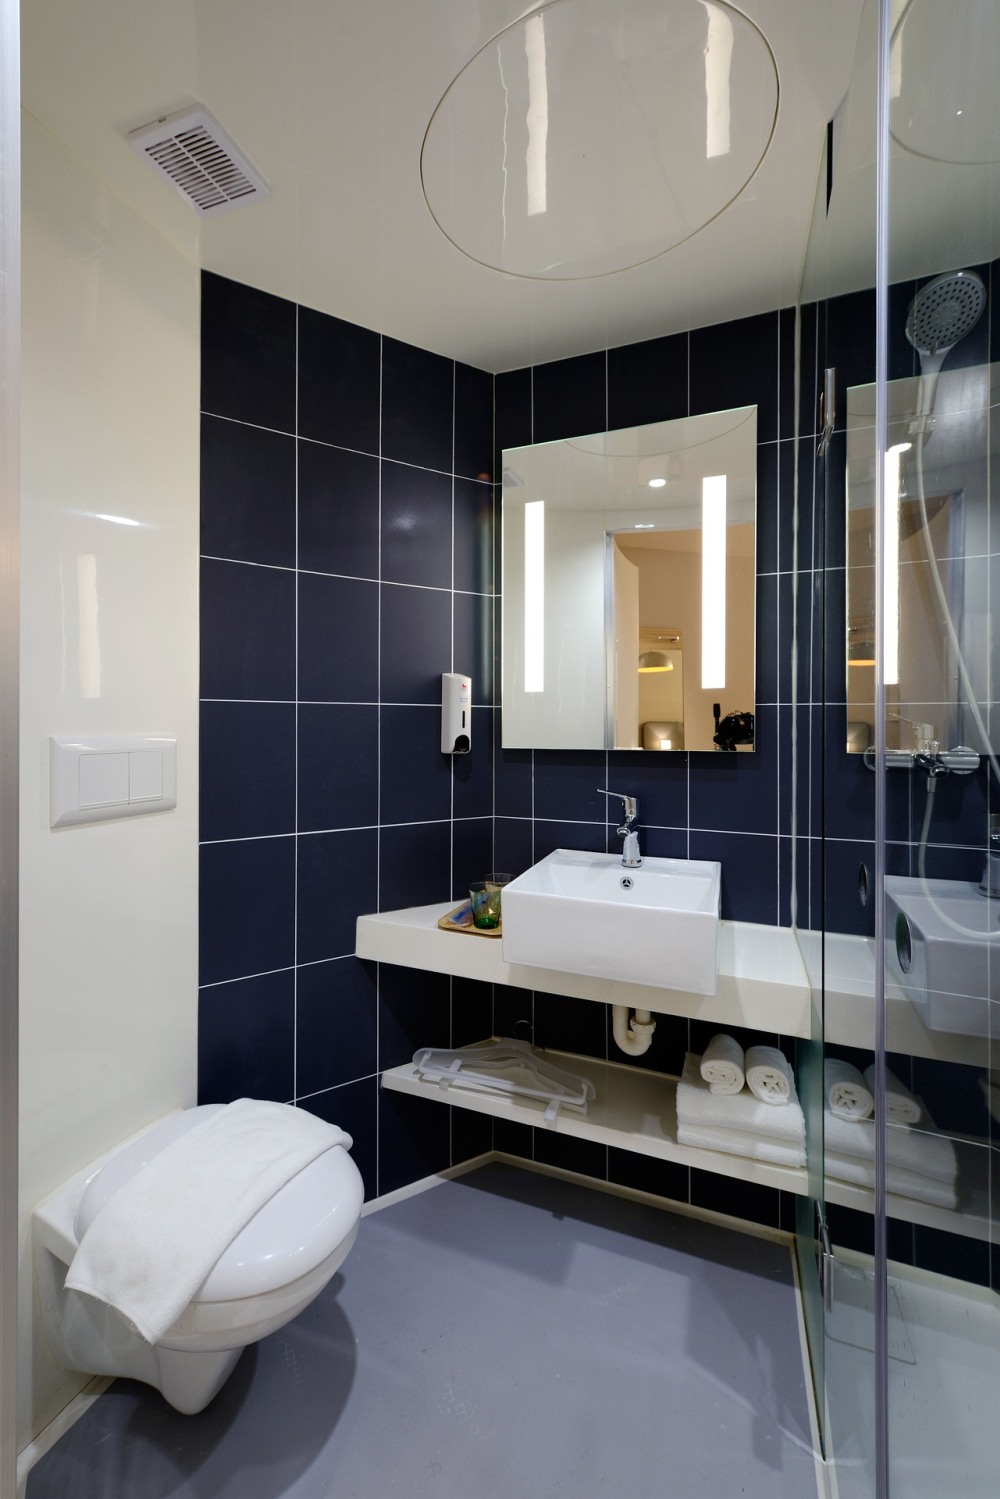 зеркальный потолок в ванной, потолок для мытья в ванной, плексигласовый потолок в ванной